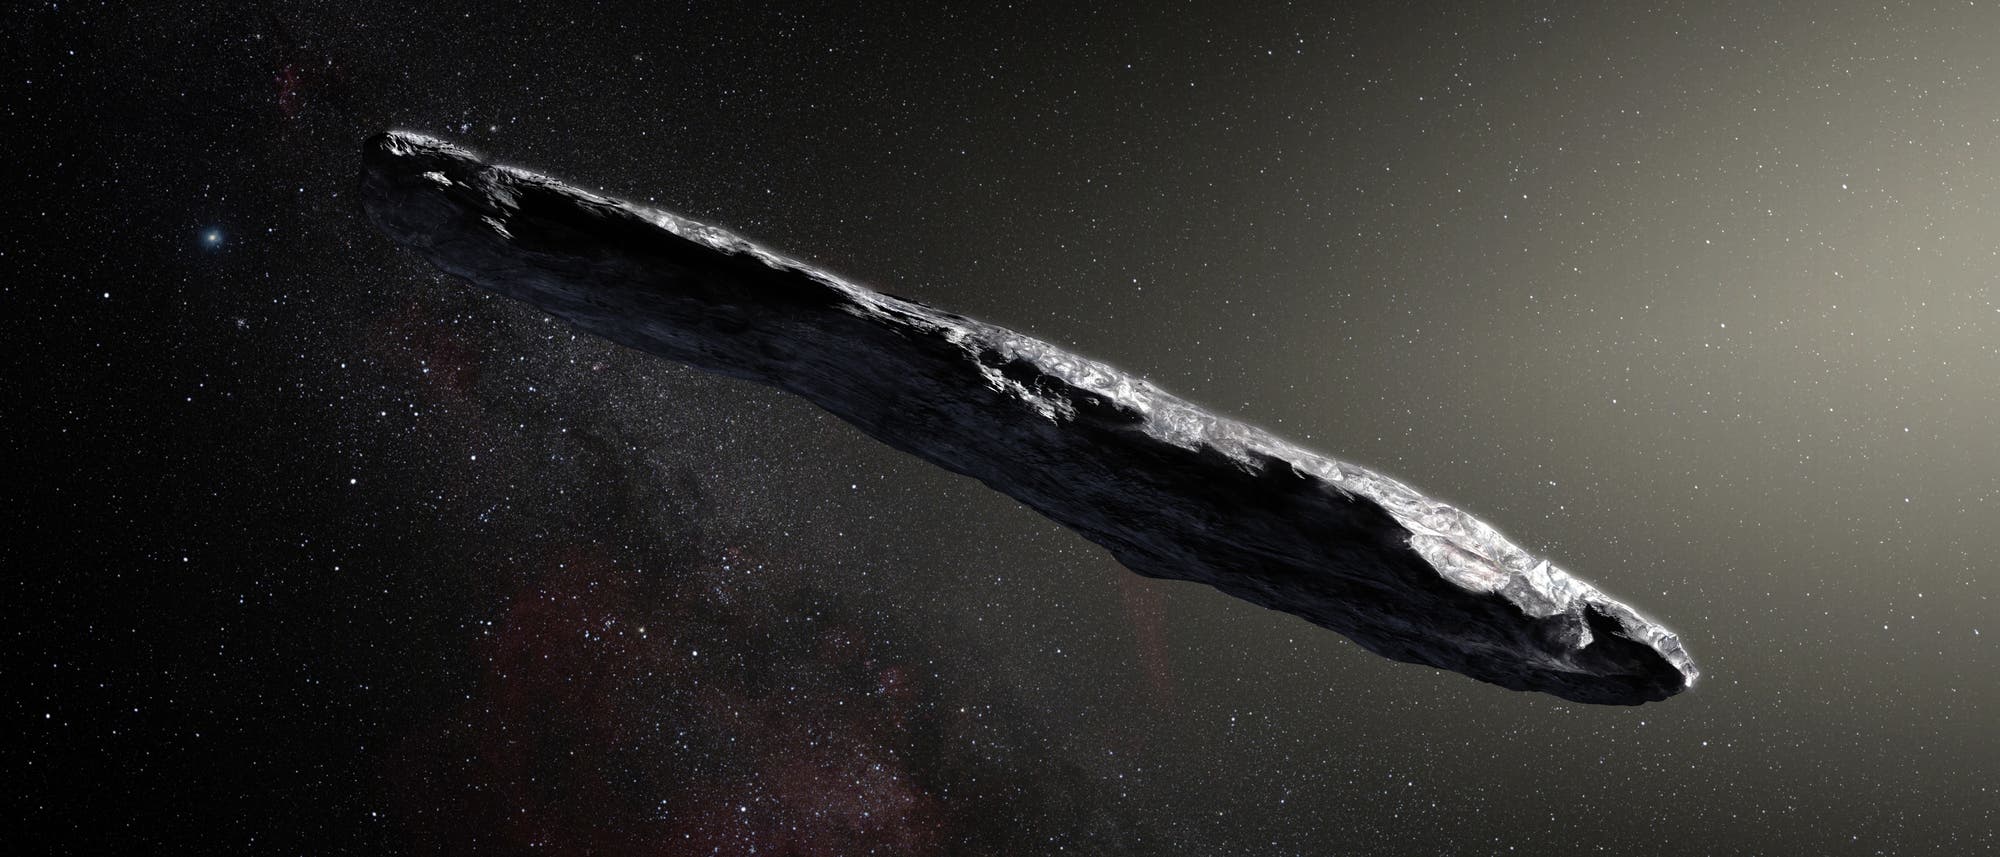 Bei seinem raschen Durchflug durch unser Sonnensystem schlug der bizarr geformte interstellare Asteroid 1I/‘Oumuamua einen stark gekrümmten Haken. 